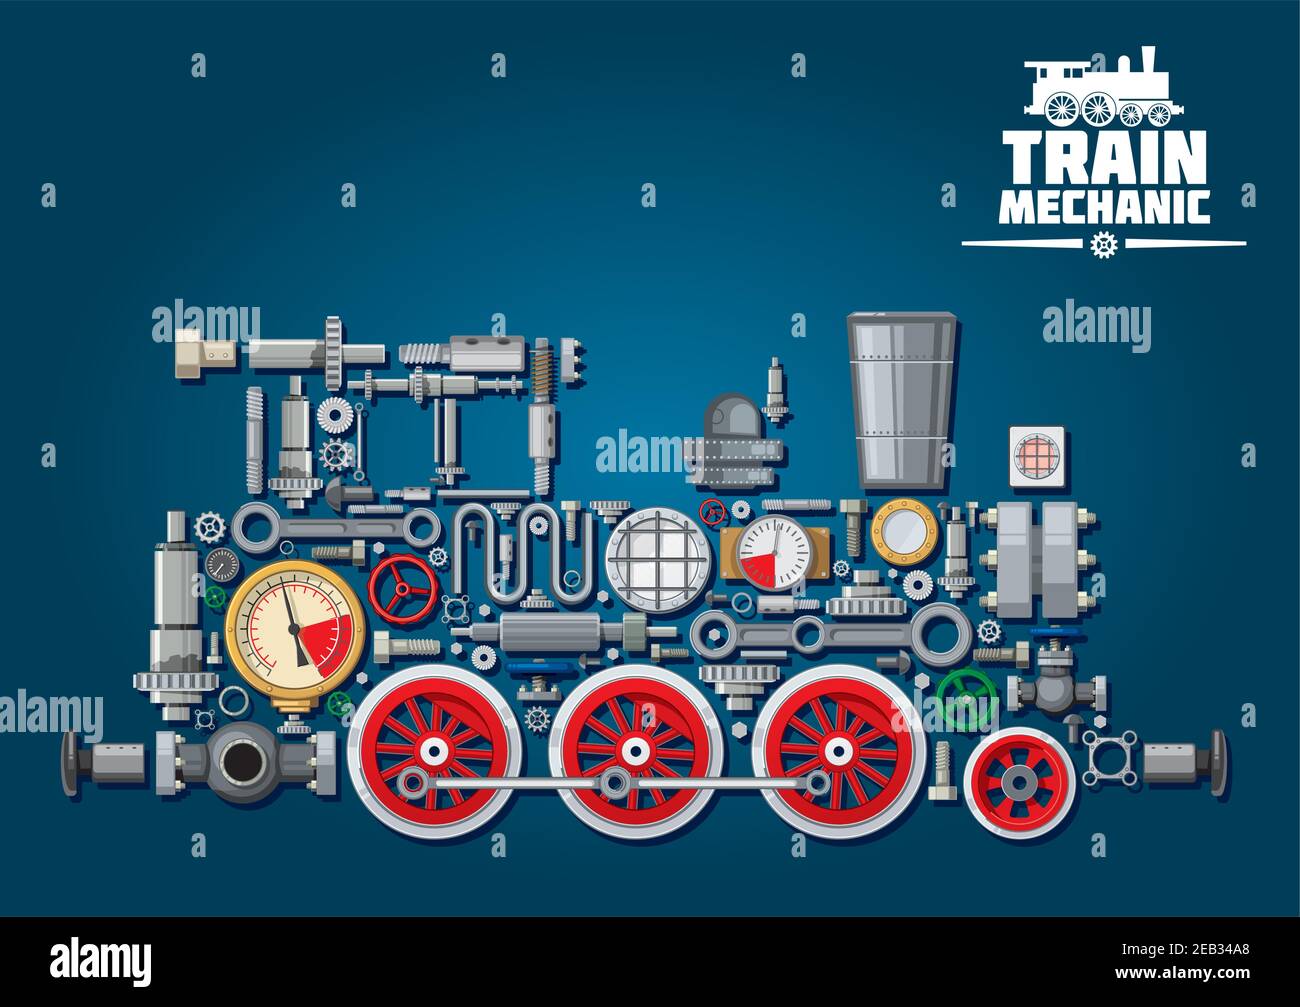 Train de locomotives à vapeur composé de pièces mécaniques comme moteur à vapeur, système de transmission, boîte de vitesses, roues dentées, manomètres colorés, soupapes, en marche Illustration de Vecteur